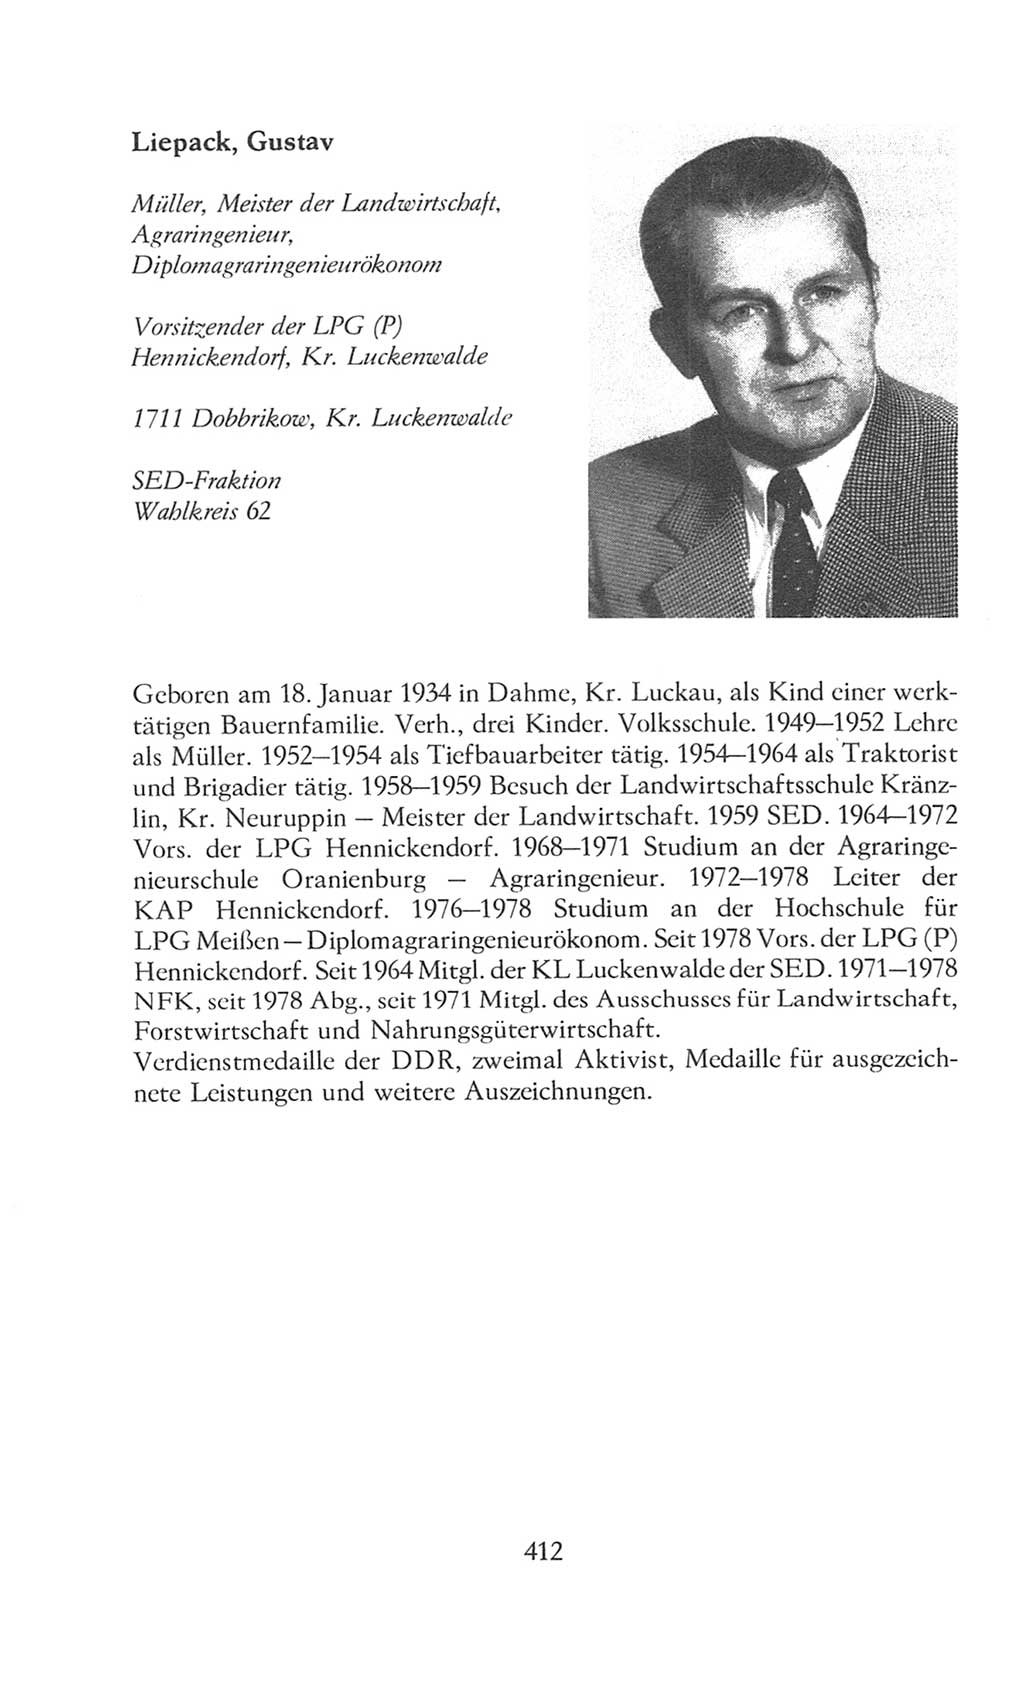 Volkskammer (VK) der Deutschen Demokratischen Republik (DDR), 8. Wahlperiode 1981-1986, Seite 412 (VK. DDR 8. WP. 1981-1986, S. 412)